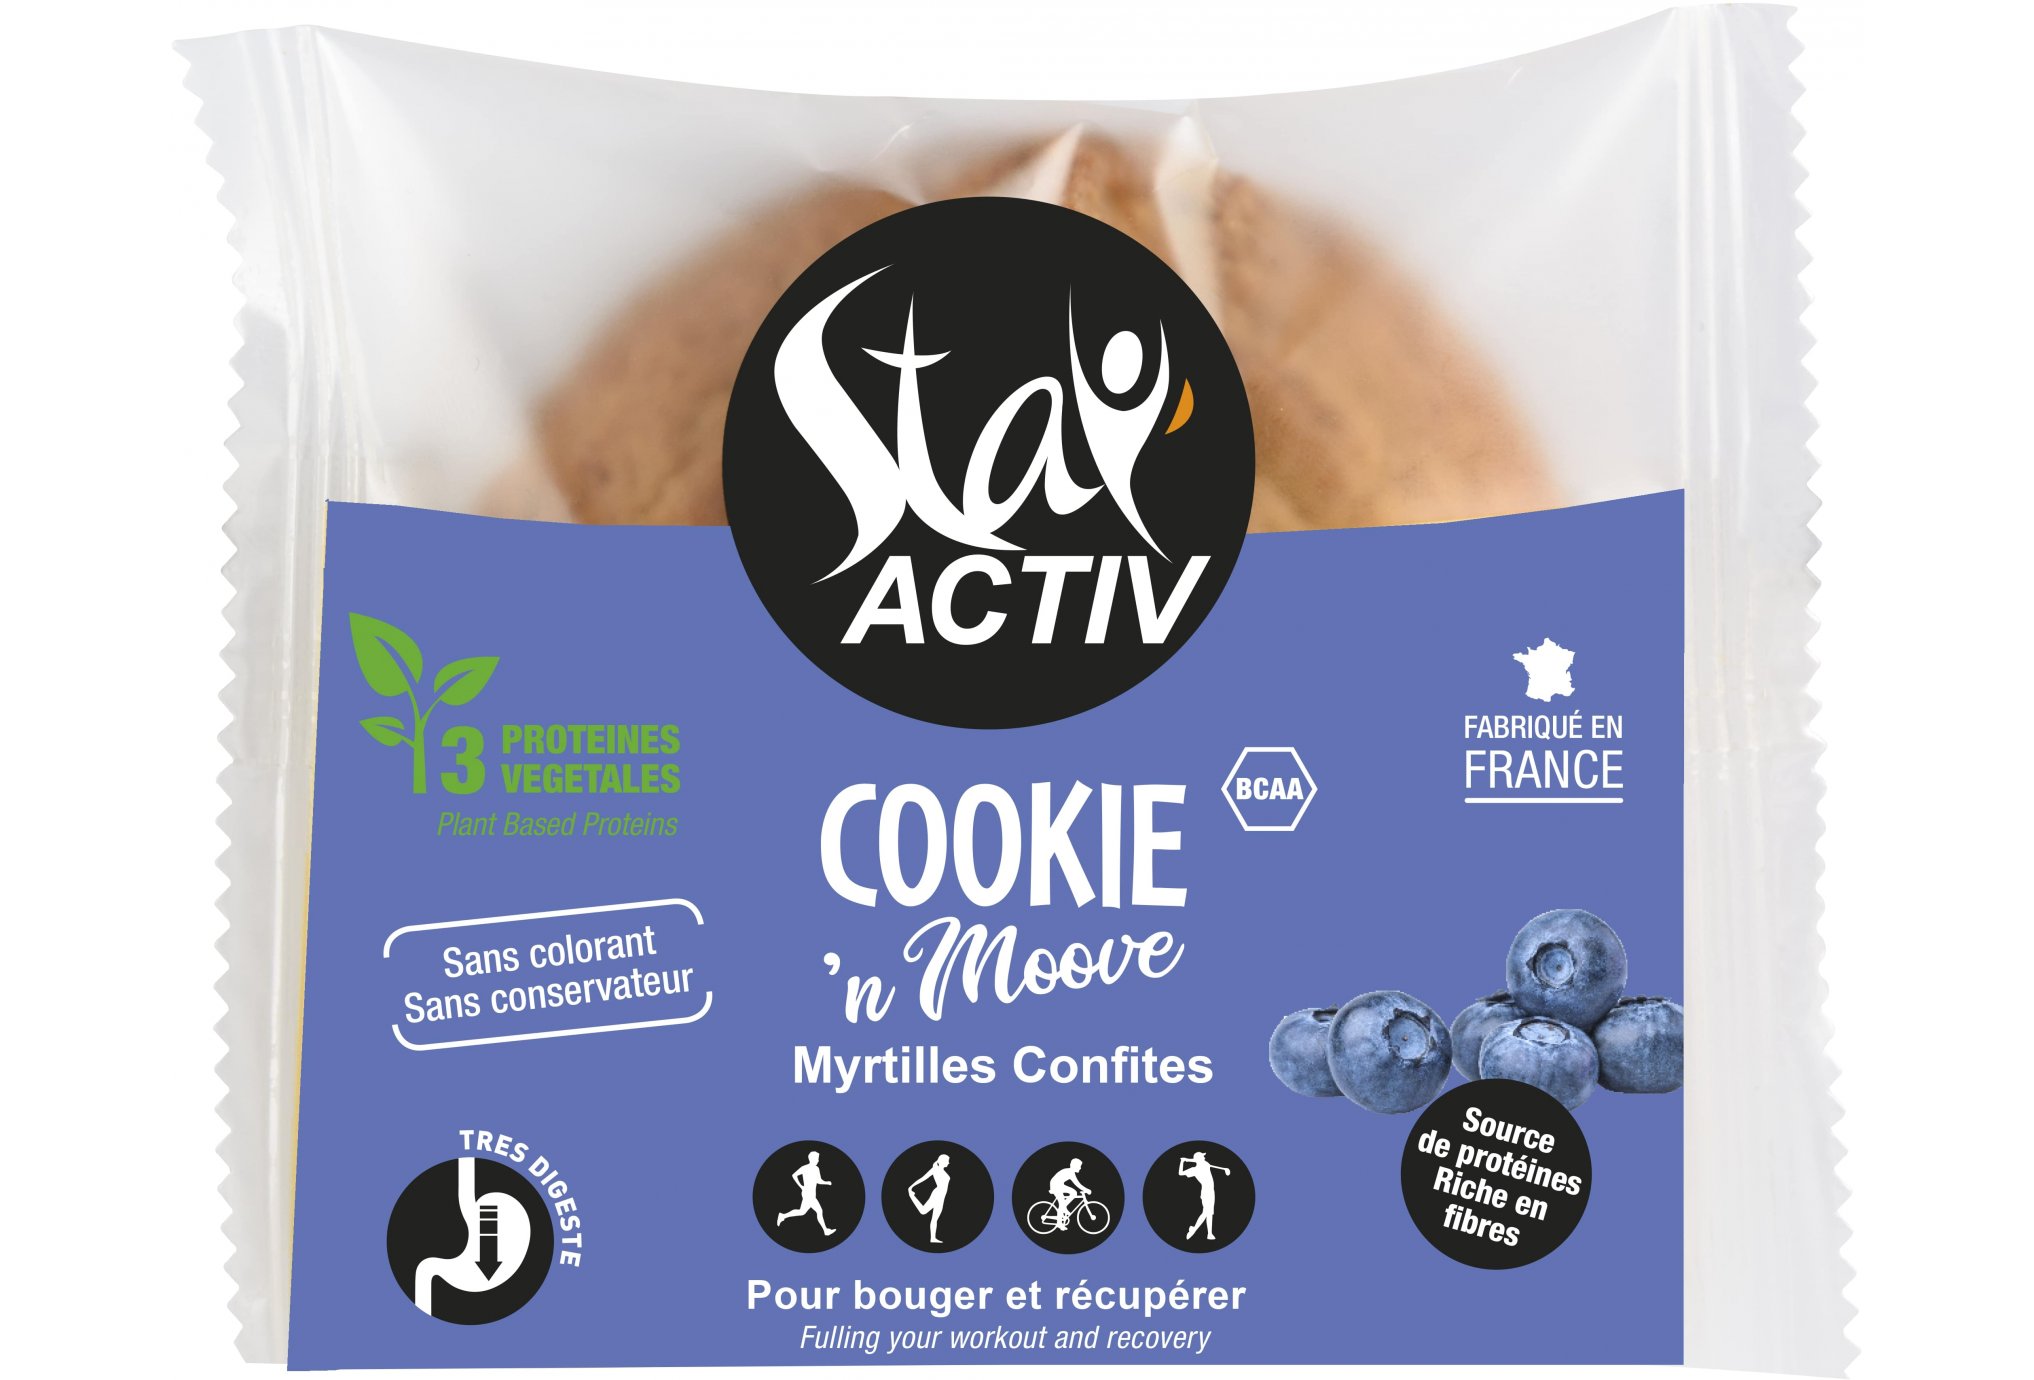 Stay Activ Cookie'n Moove - Myrtille Diététique Barres